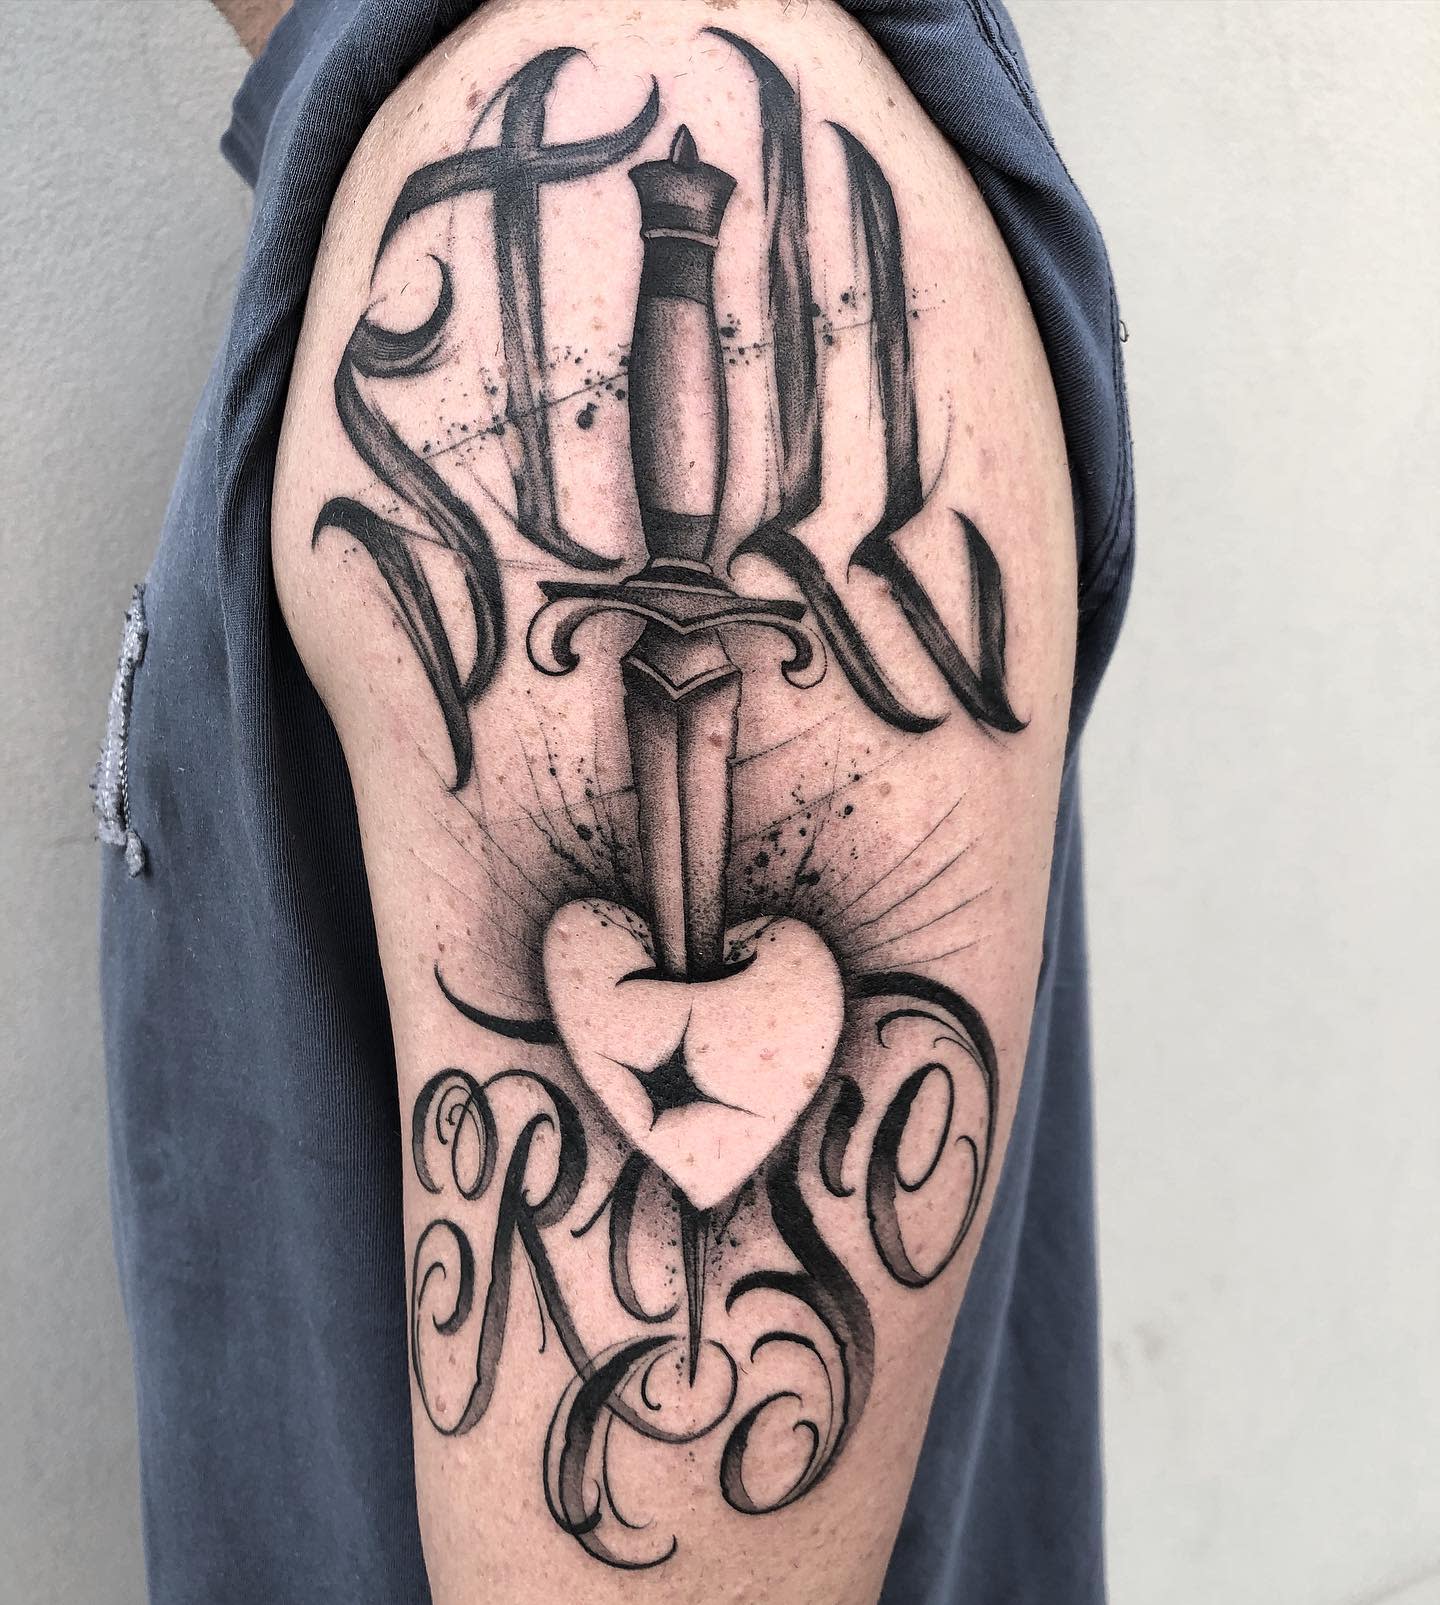 Shoulder Still I Rise Tattoo -ivanb_tattoo